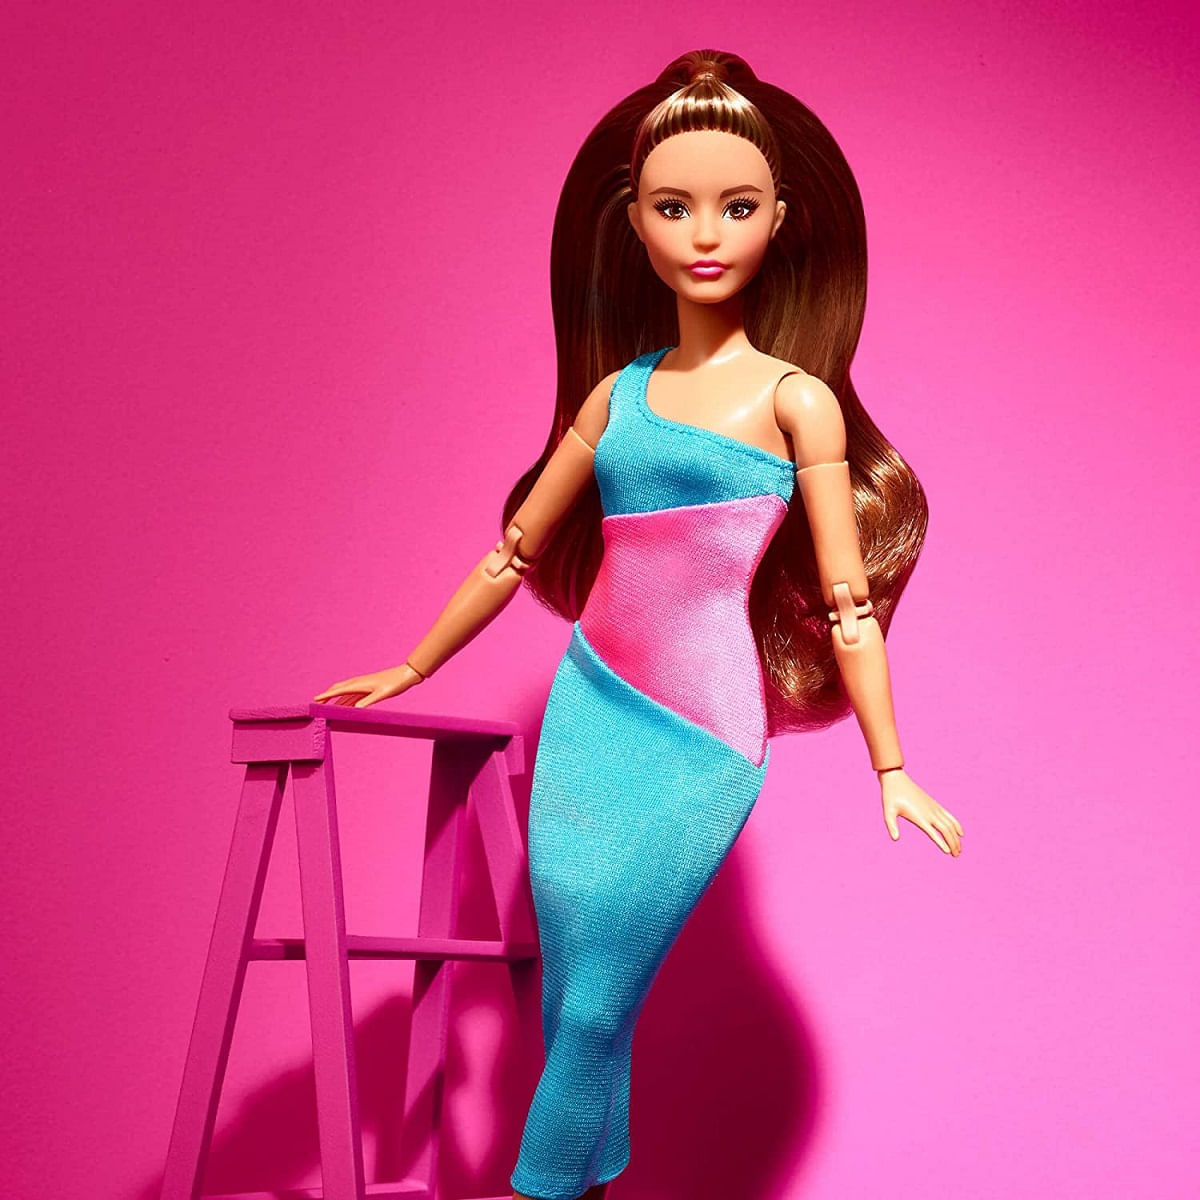 PRÉ-VENDA Boneca Barbie Signature Looks Morena Original - Mattel